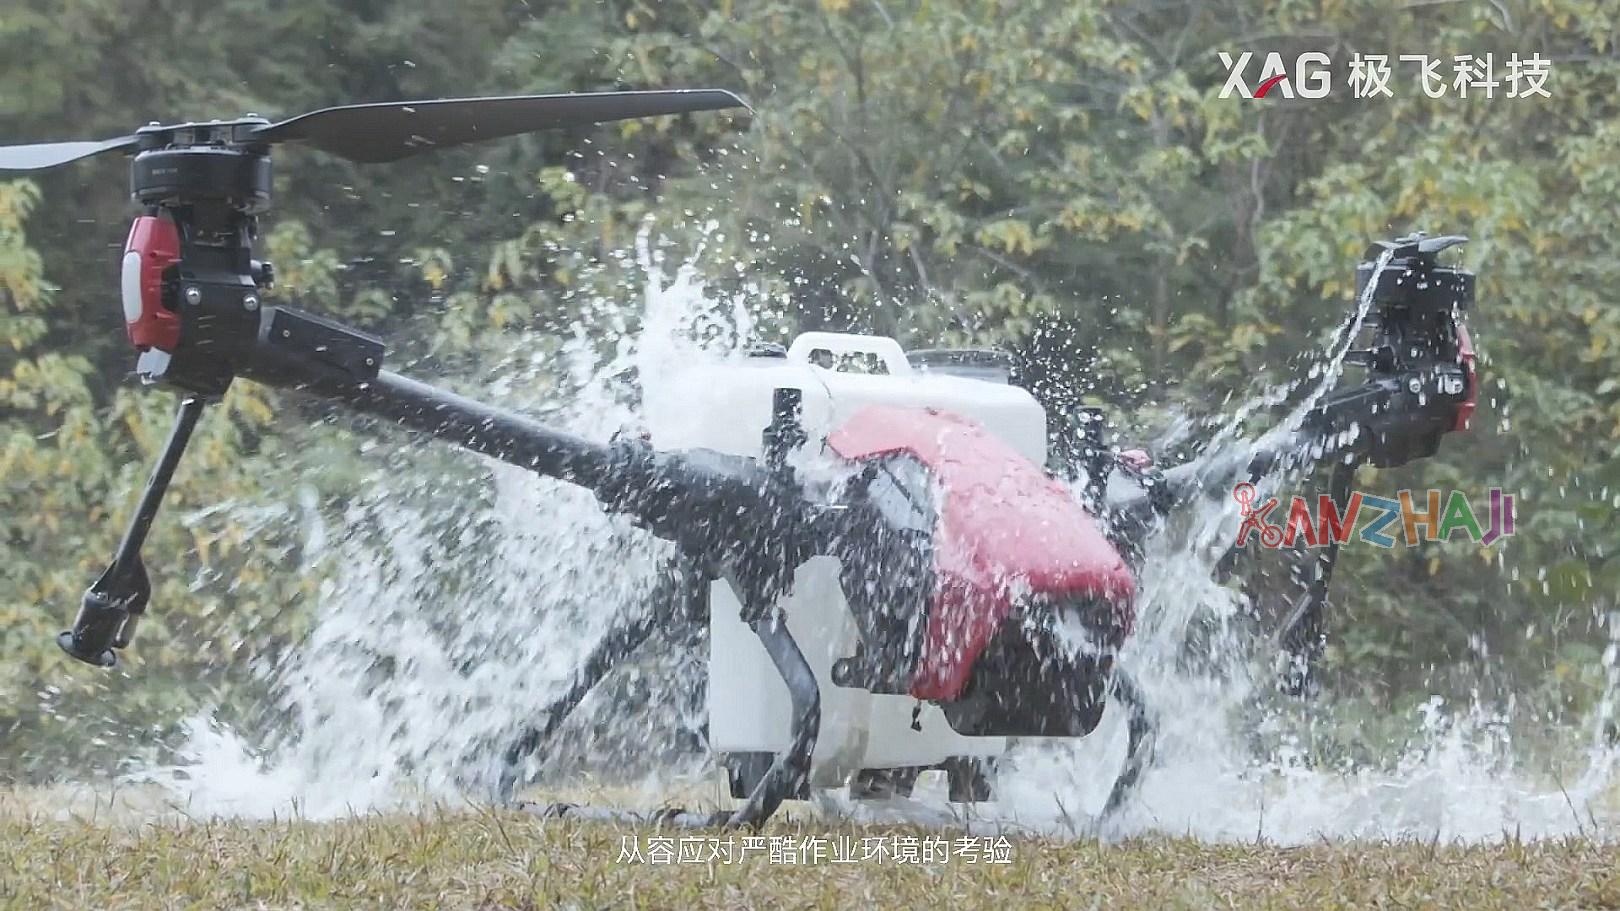 极飞科技XAG发布V40双轴农业无人机